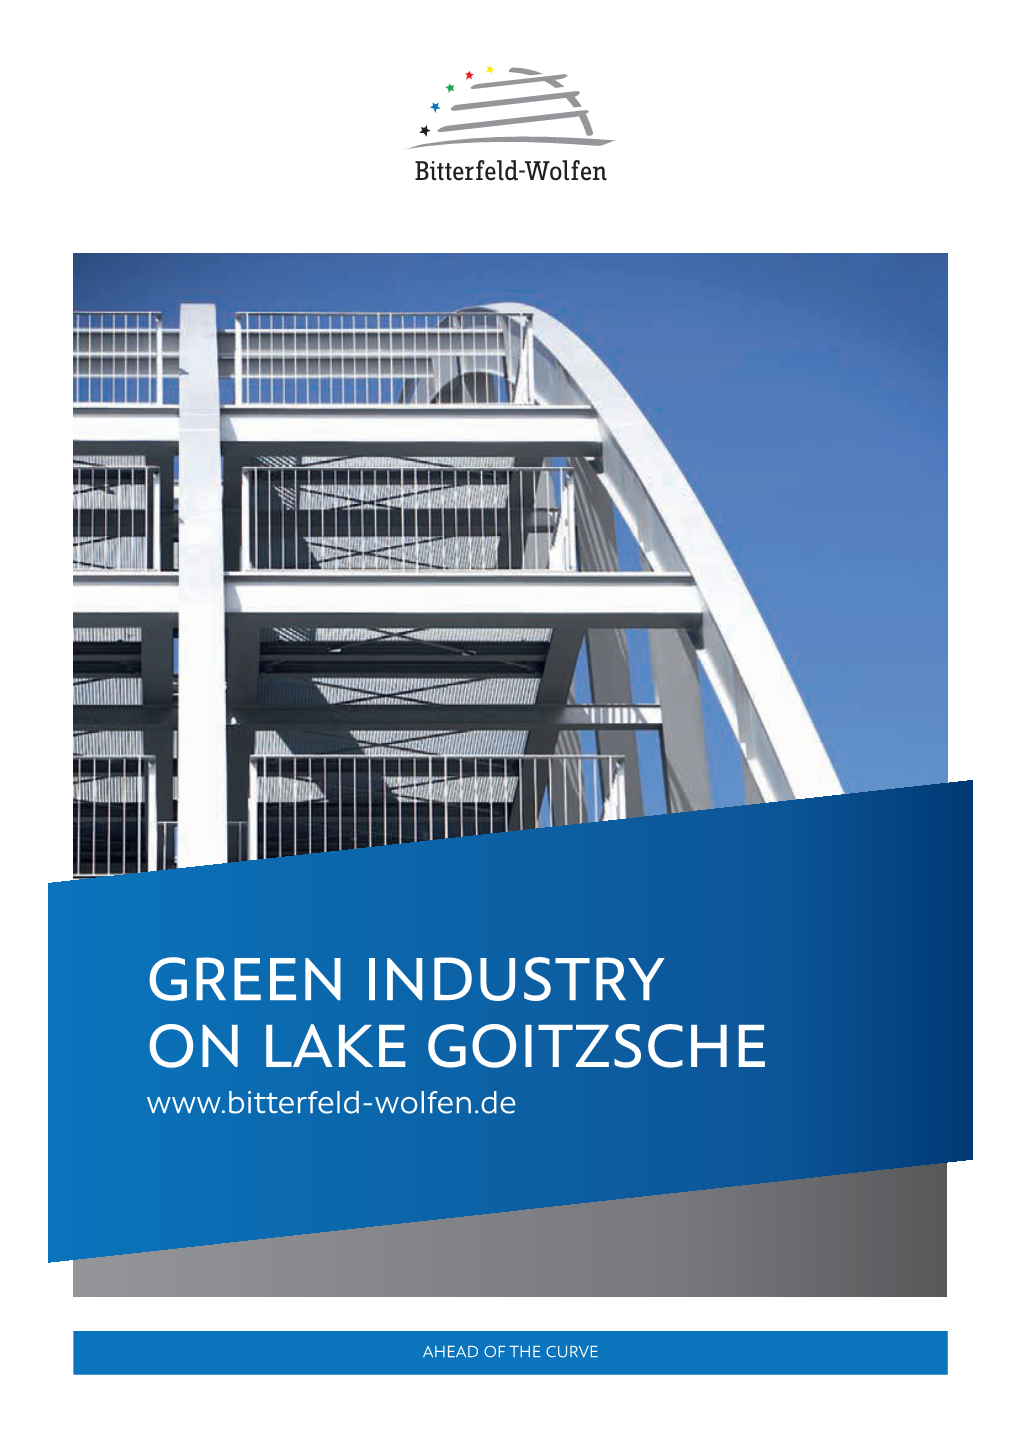 Green Industry on Lake Goitzsche